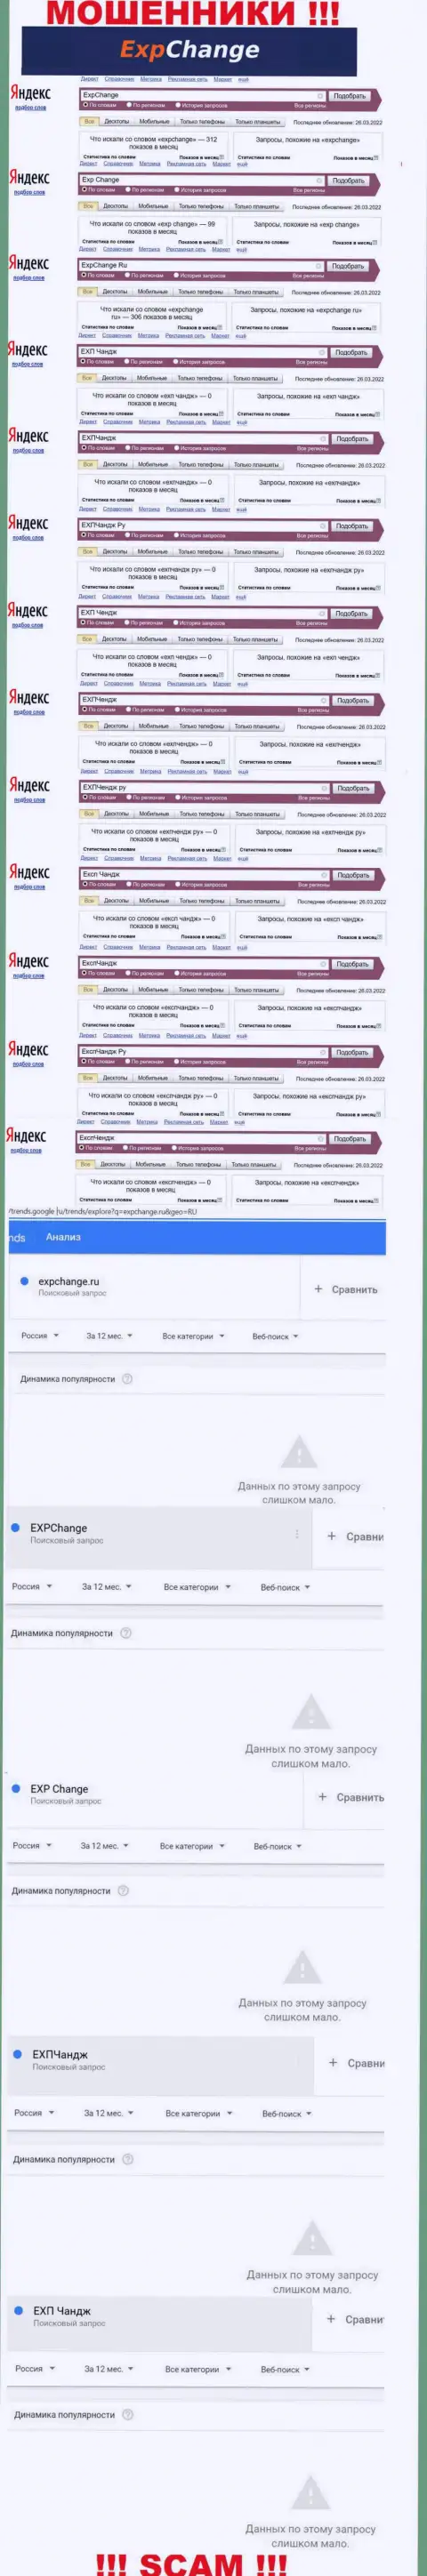 Число онлайн-запросов пользователями всемирной сети internet информации об мошенниках ExpChange Ru